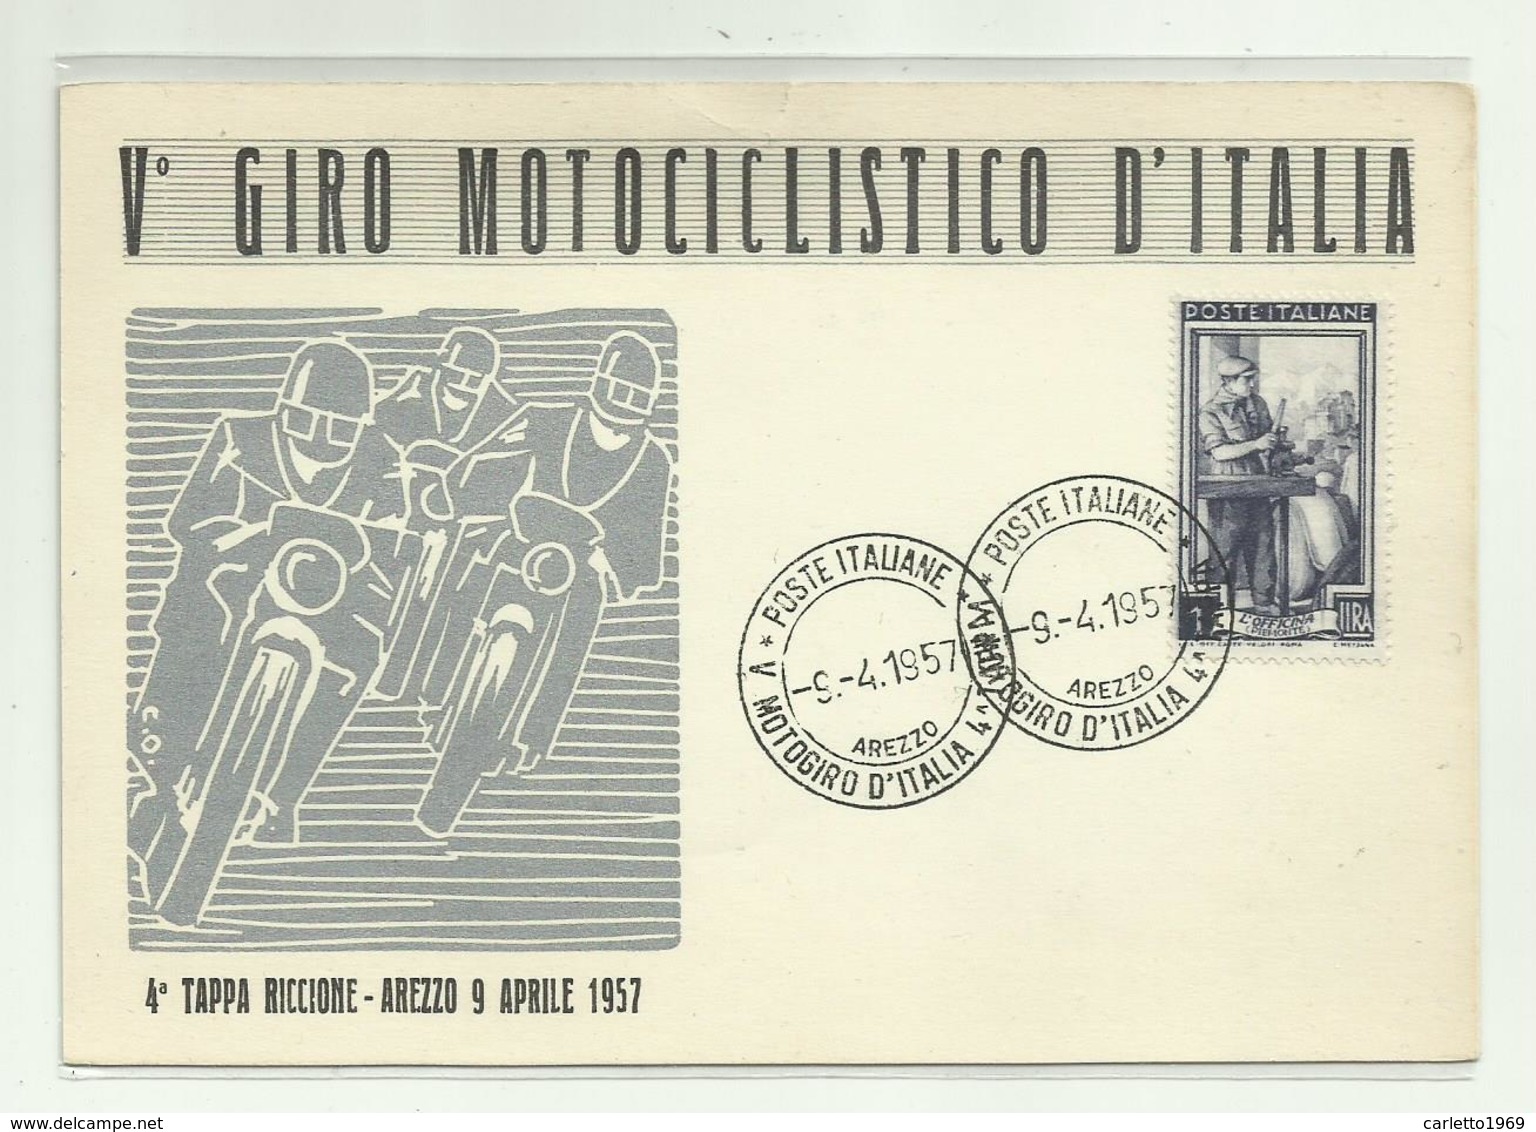 V GIRO MOTOCICLISTICO D'ITALIA - 4a TAPPA RICCIONE - AREZZO 9 APRILE 1957 - NV FG - Motorcycle Sport